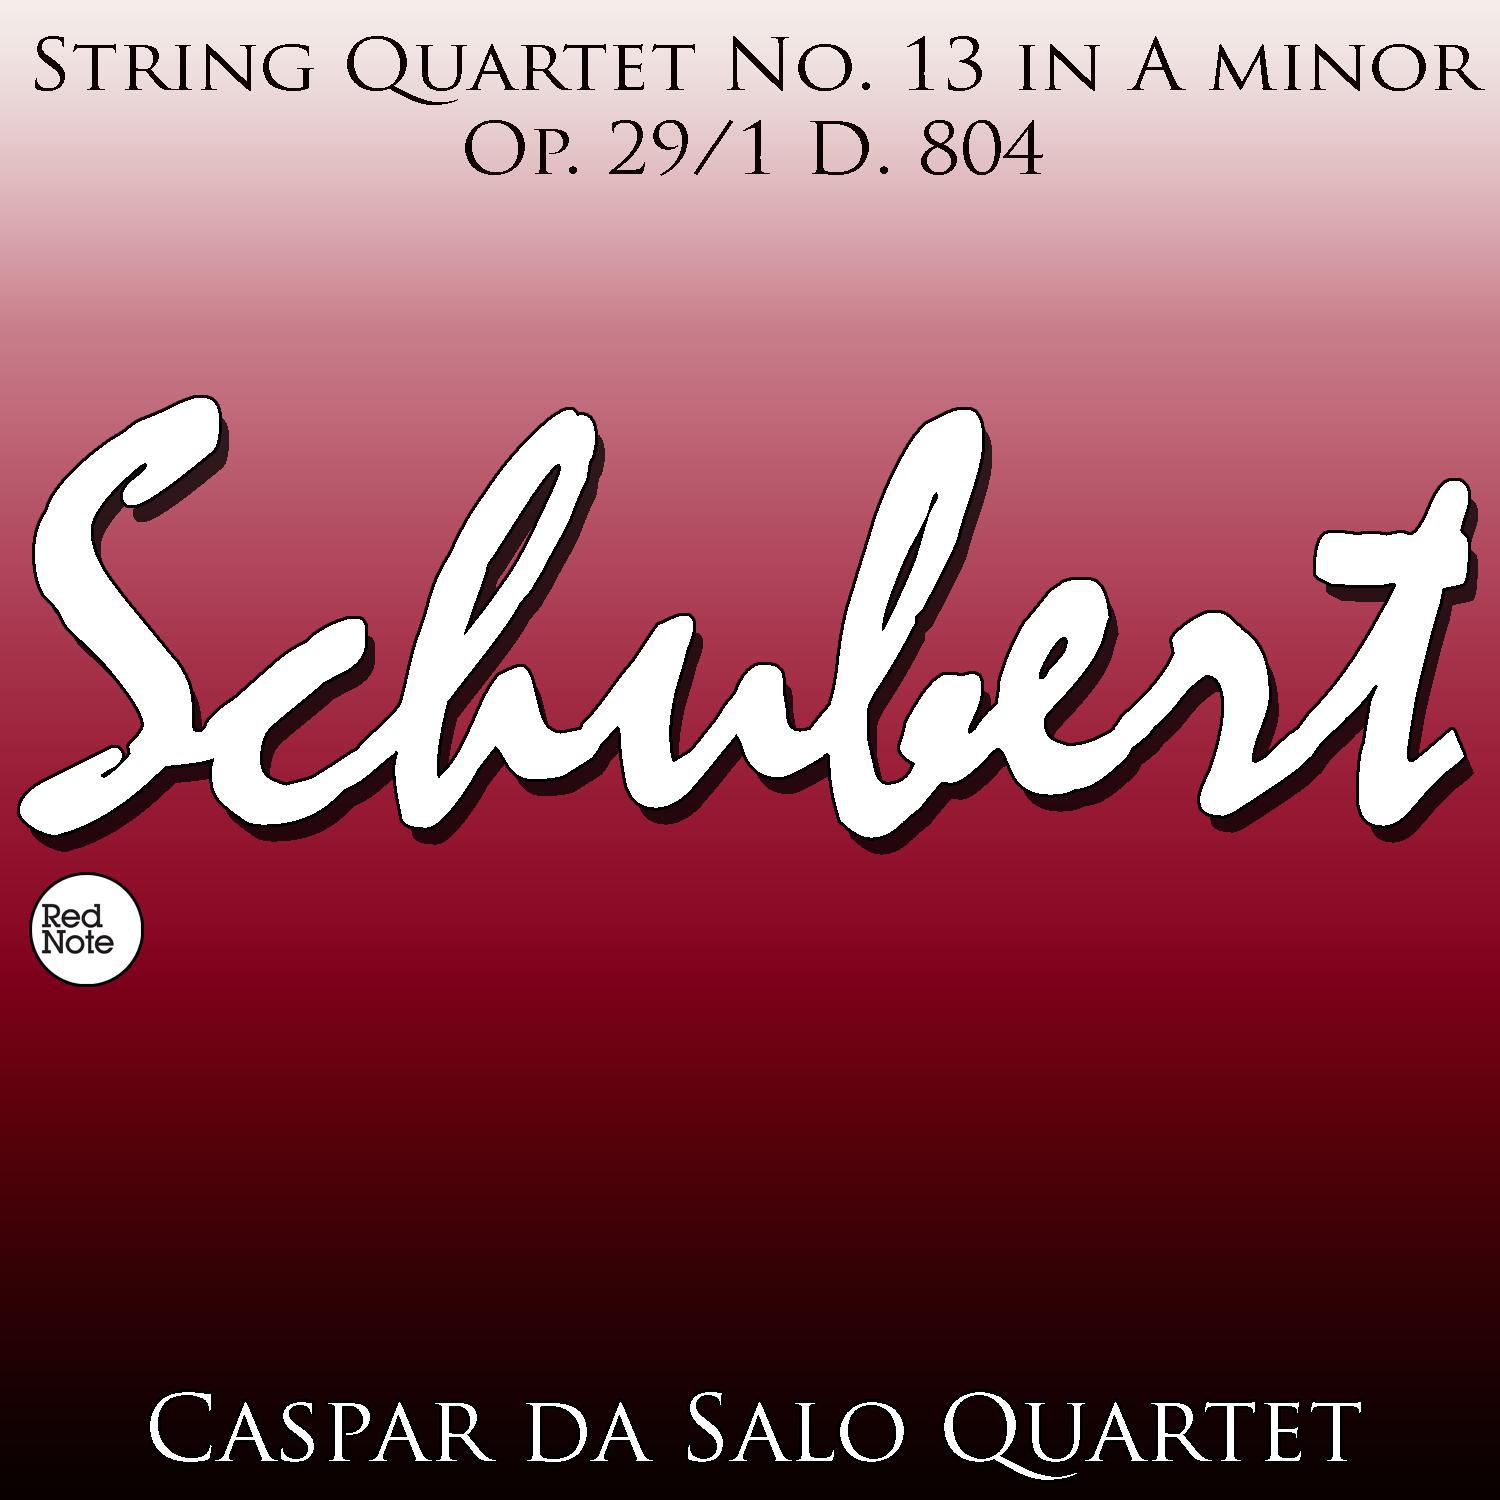 String Quartet No. 13 in A minor, Op. 29/1 D. 804: III. Minuetto: Allegretto - Trio